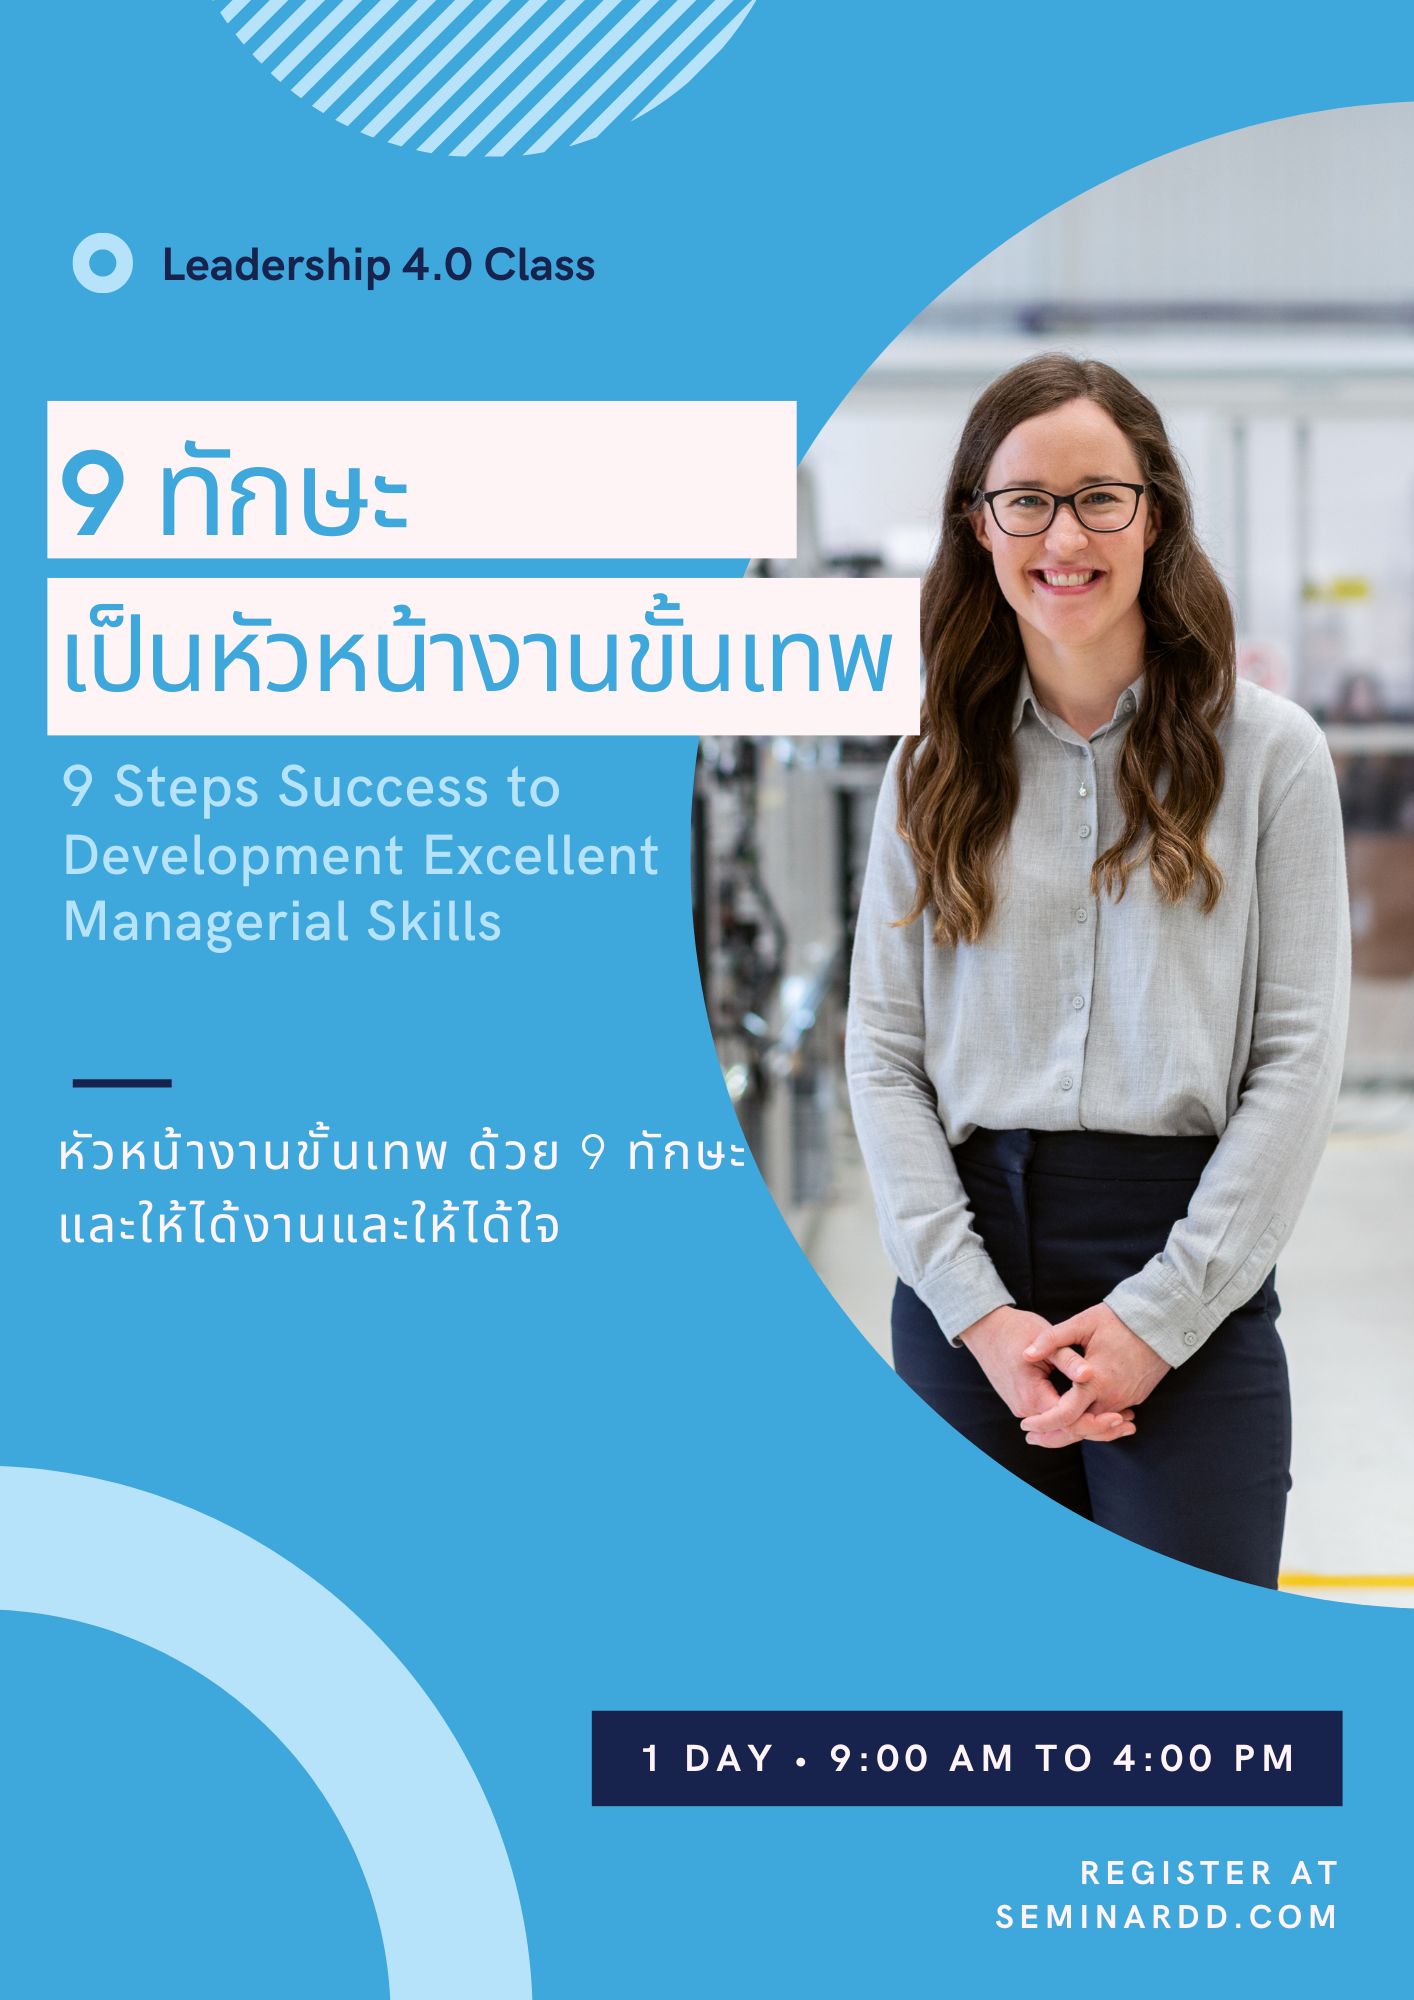 หลักสูตร 9 ทักษะความสำเร็จเพื่อยกระดับการเป็นหัวหน้างานขั้นเทพ (9 Steps Success to Development Excellent Managerial Skills) อบรมในรูปแบบ Classroom